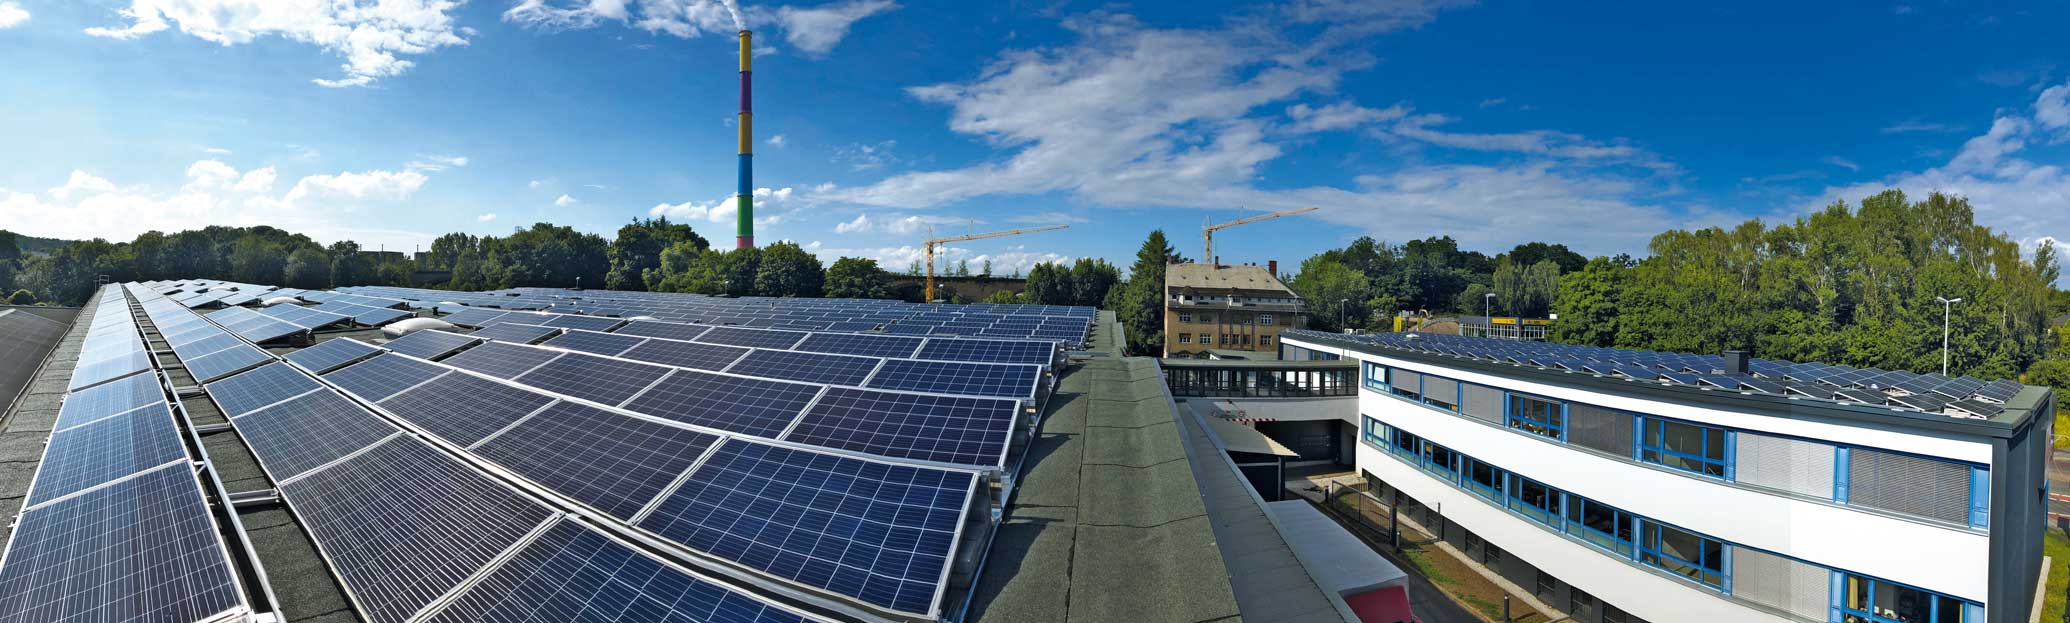 Photovoltaik-Anlagen auf unseren Dächern für die umweltfreundliche Stromproduktion